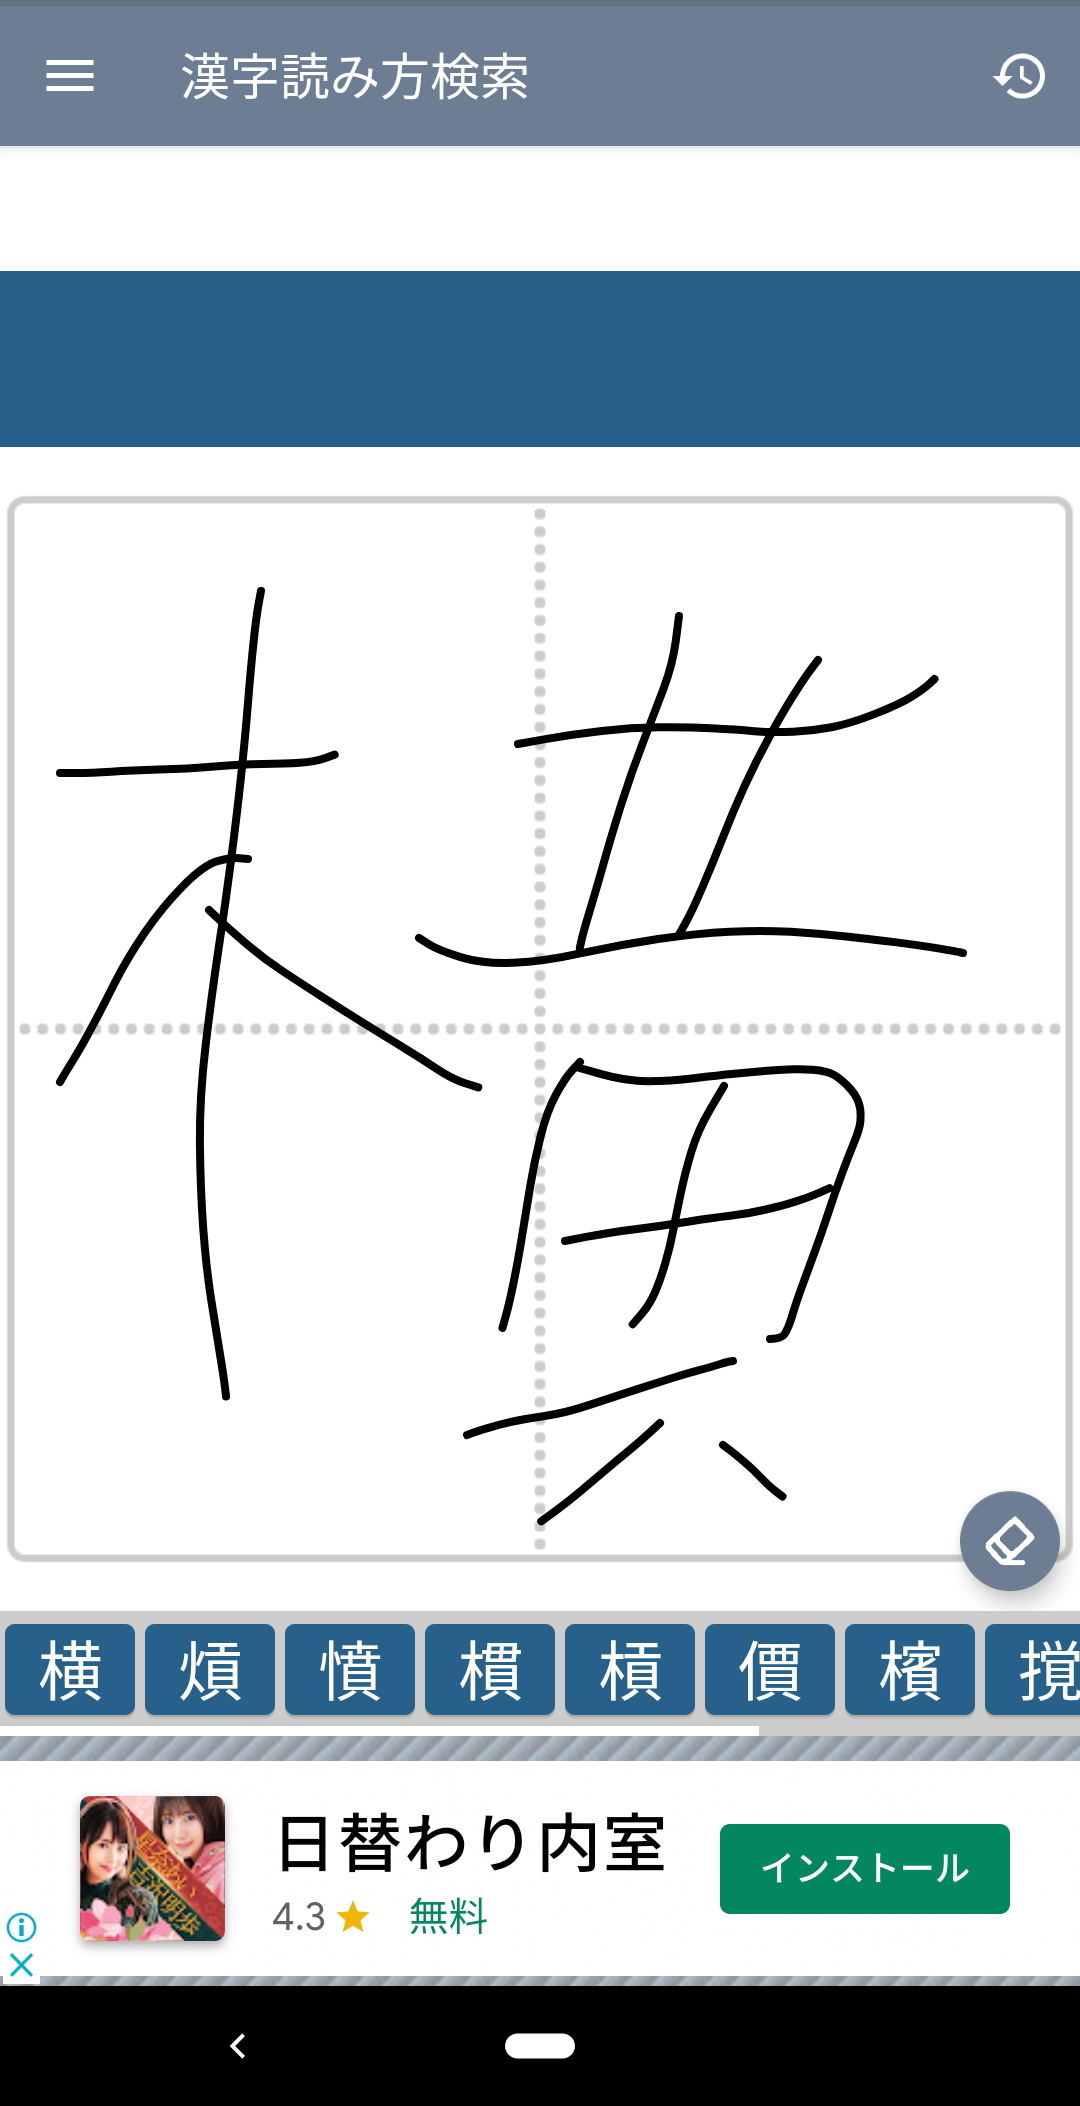 毎日がアプリディ 読み方のわからない漢字を手書きで検索 漢字読み方 漢字検索 マイナビニュース